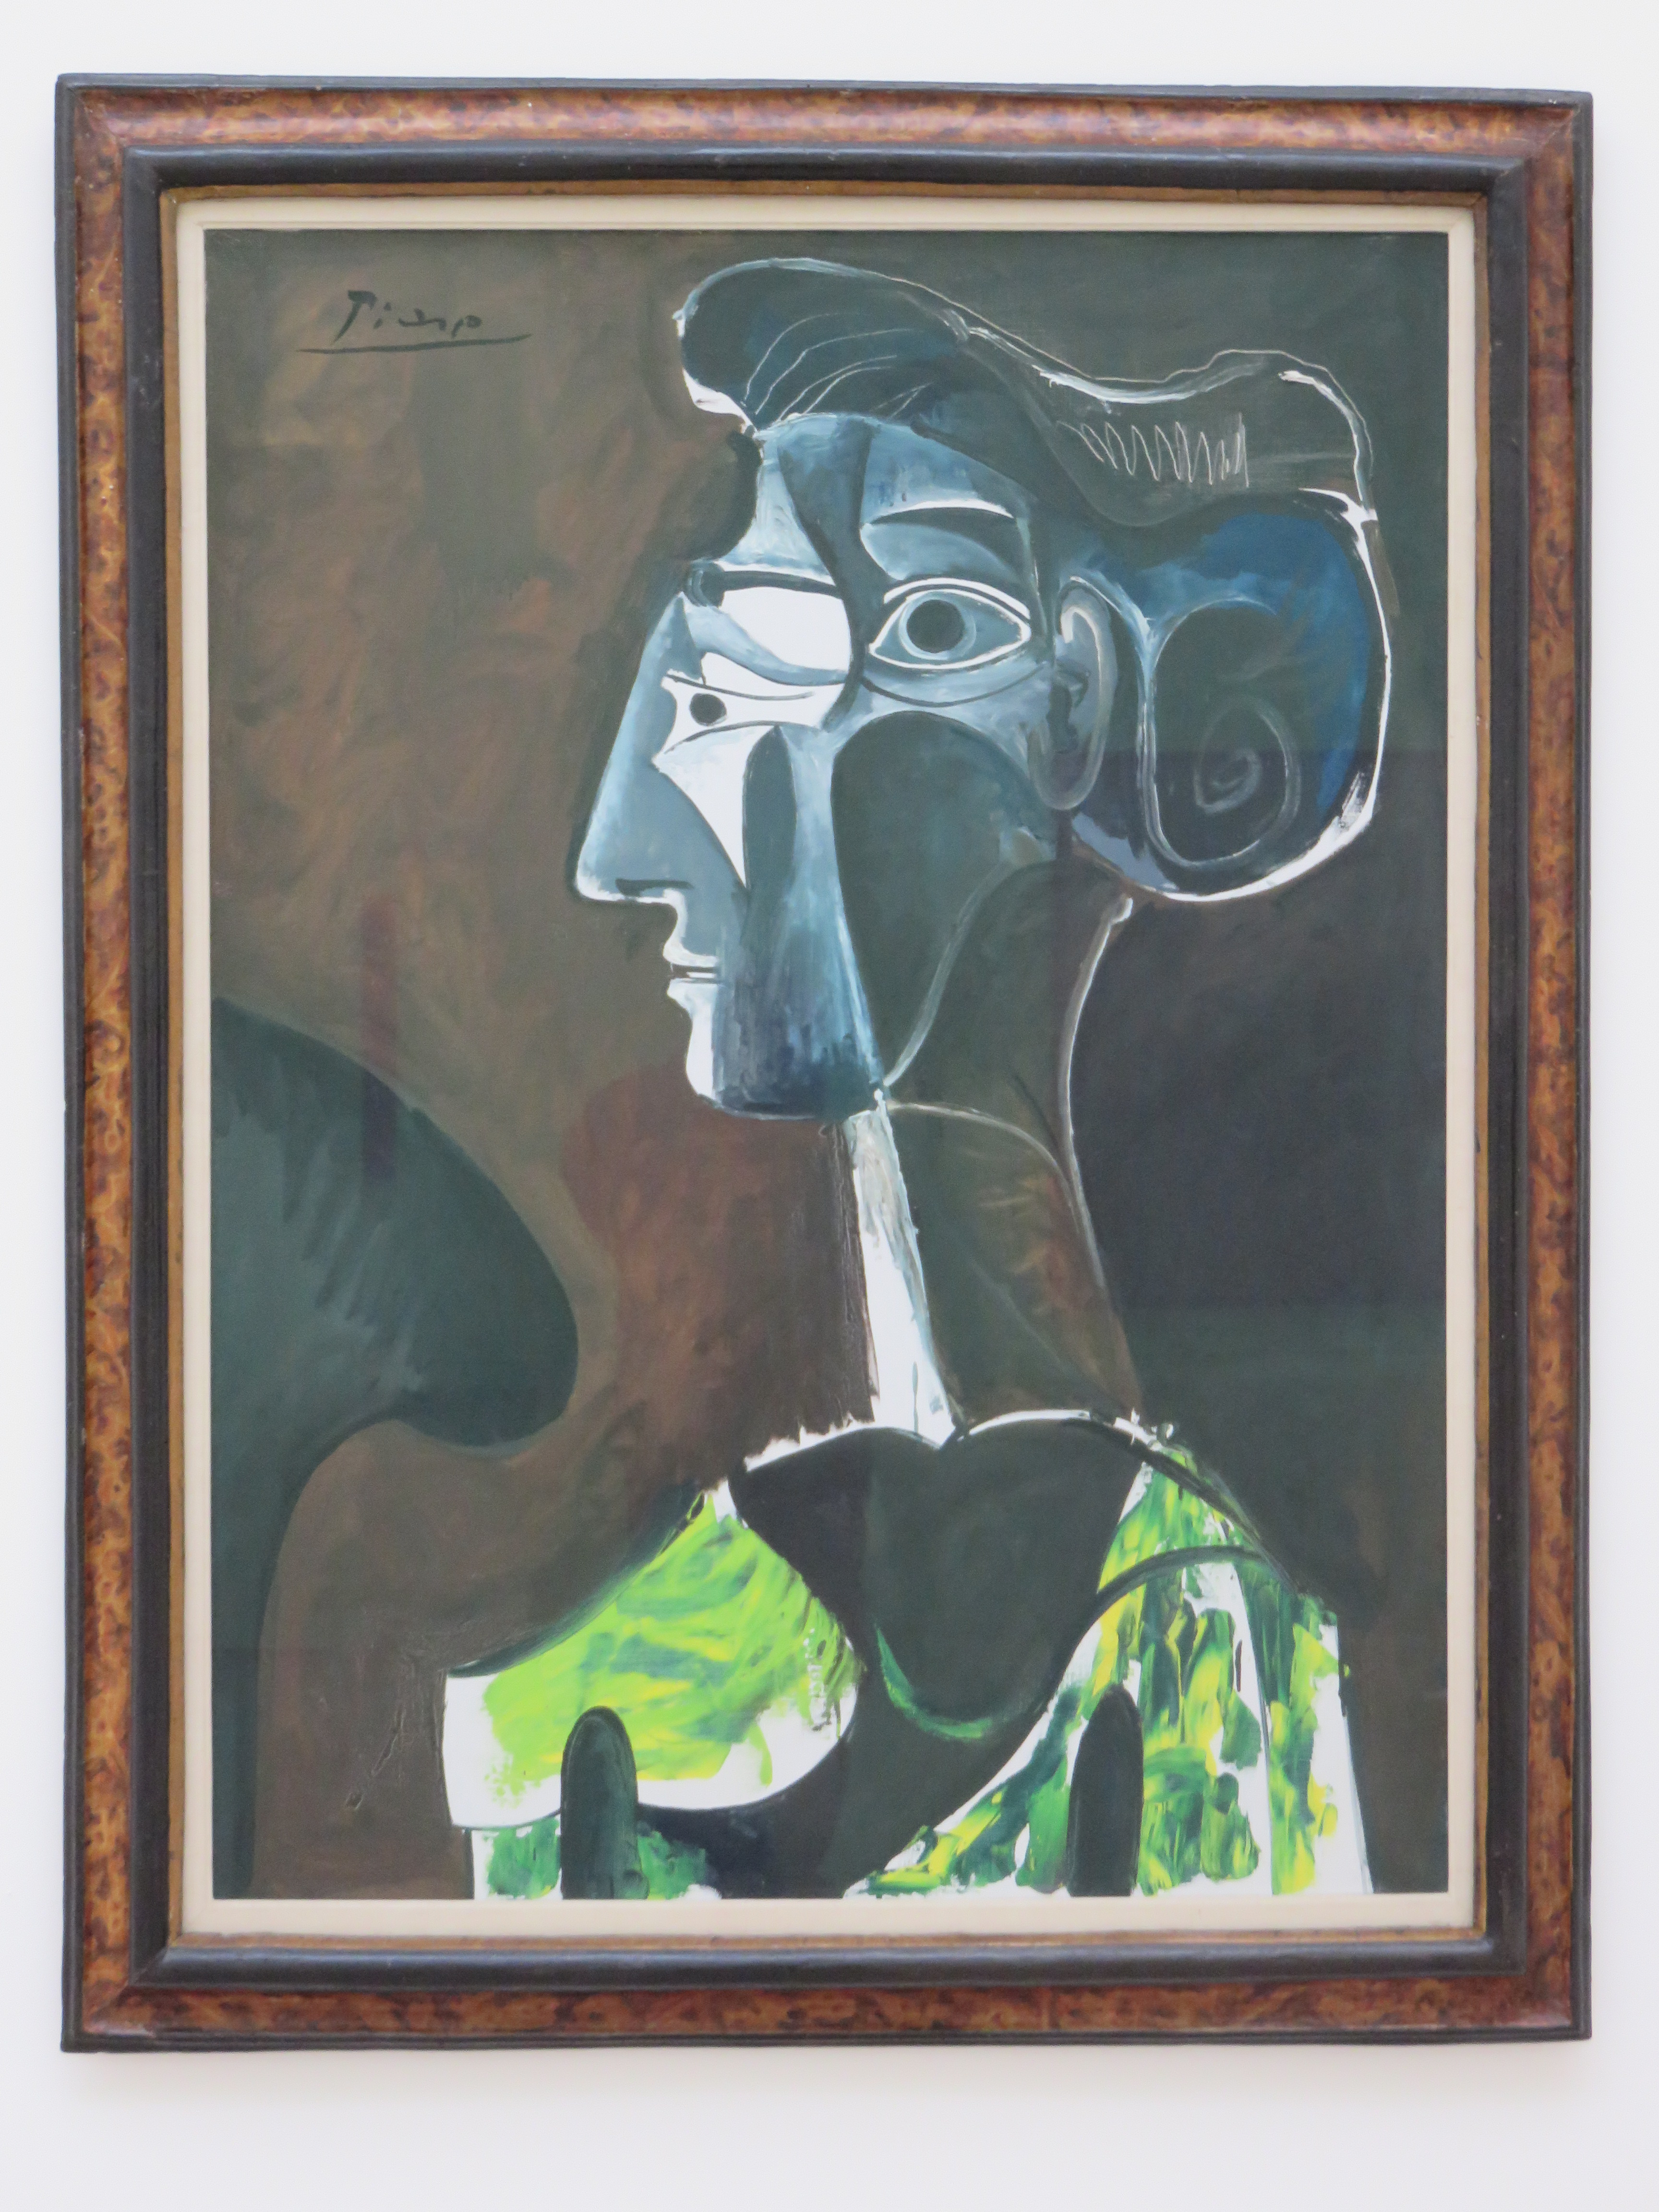 Pablo Picasso - 'Frauenporträt'